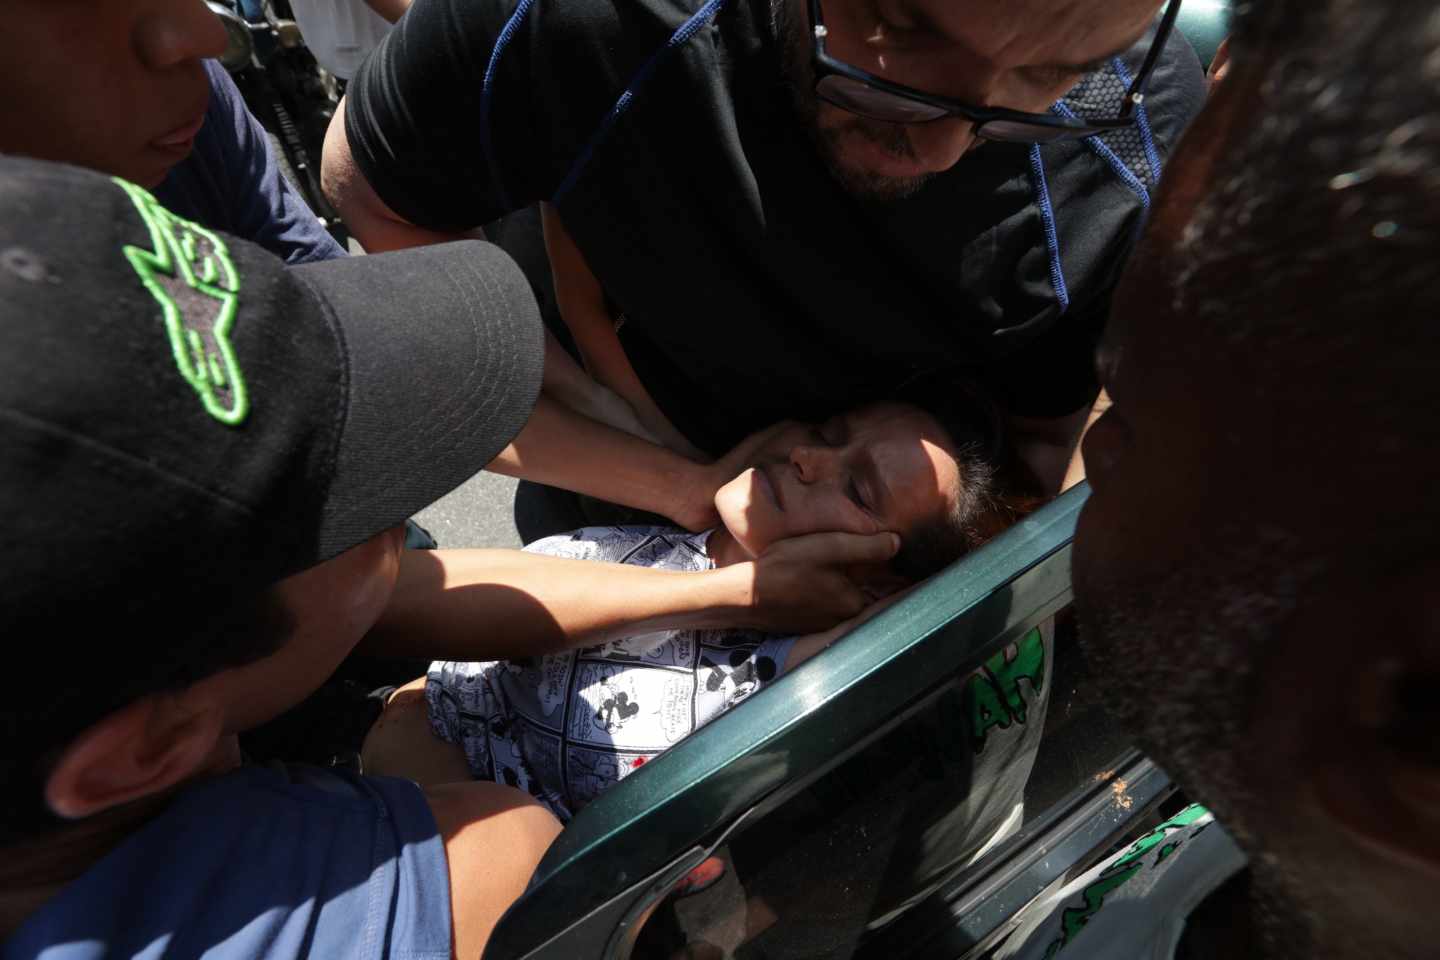 Manifestantes trasladan a una mujer herida de bala en Caracas, Venezuela.